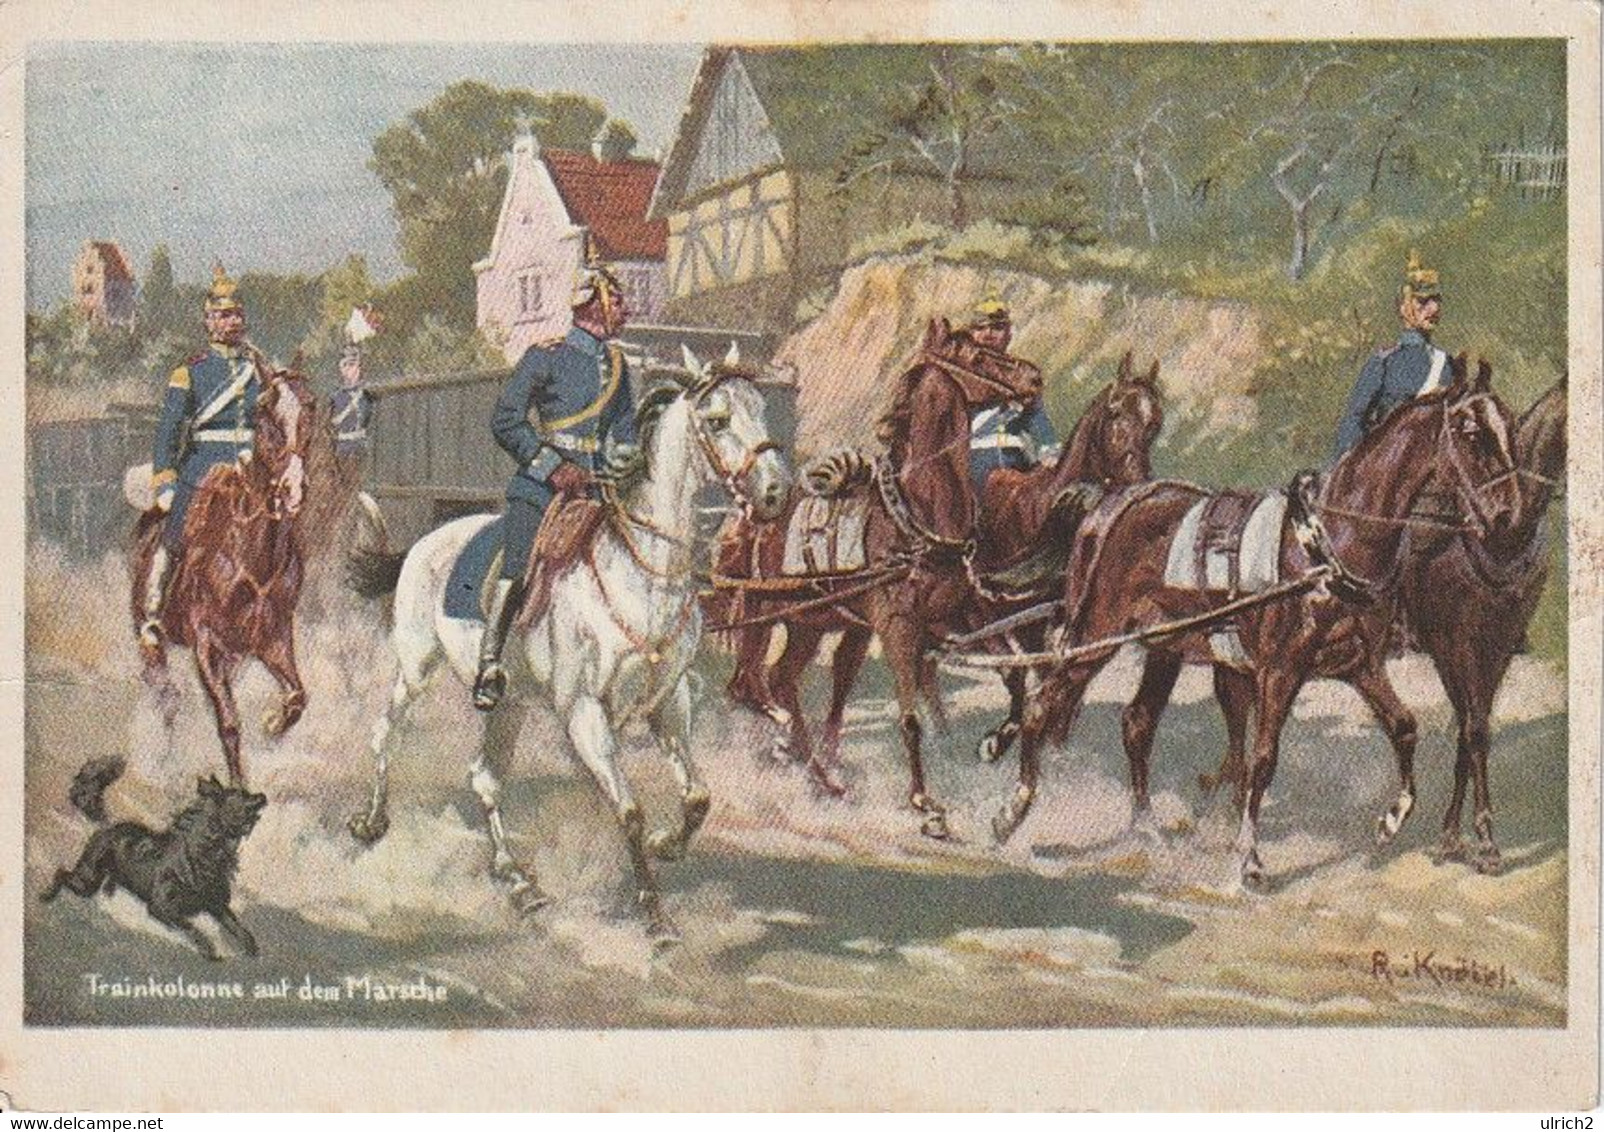 AK Trainkolonne Auf Dem Marsche - Dt. Reich - Künstlerkarte R. Knötel - Preuß. Landeskriegerverband - Ca. 1910 (60519) - Uniformi